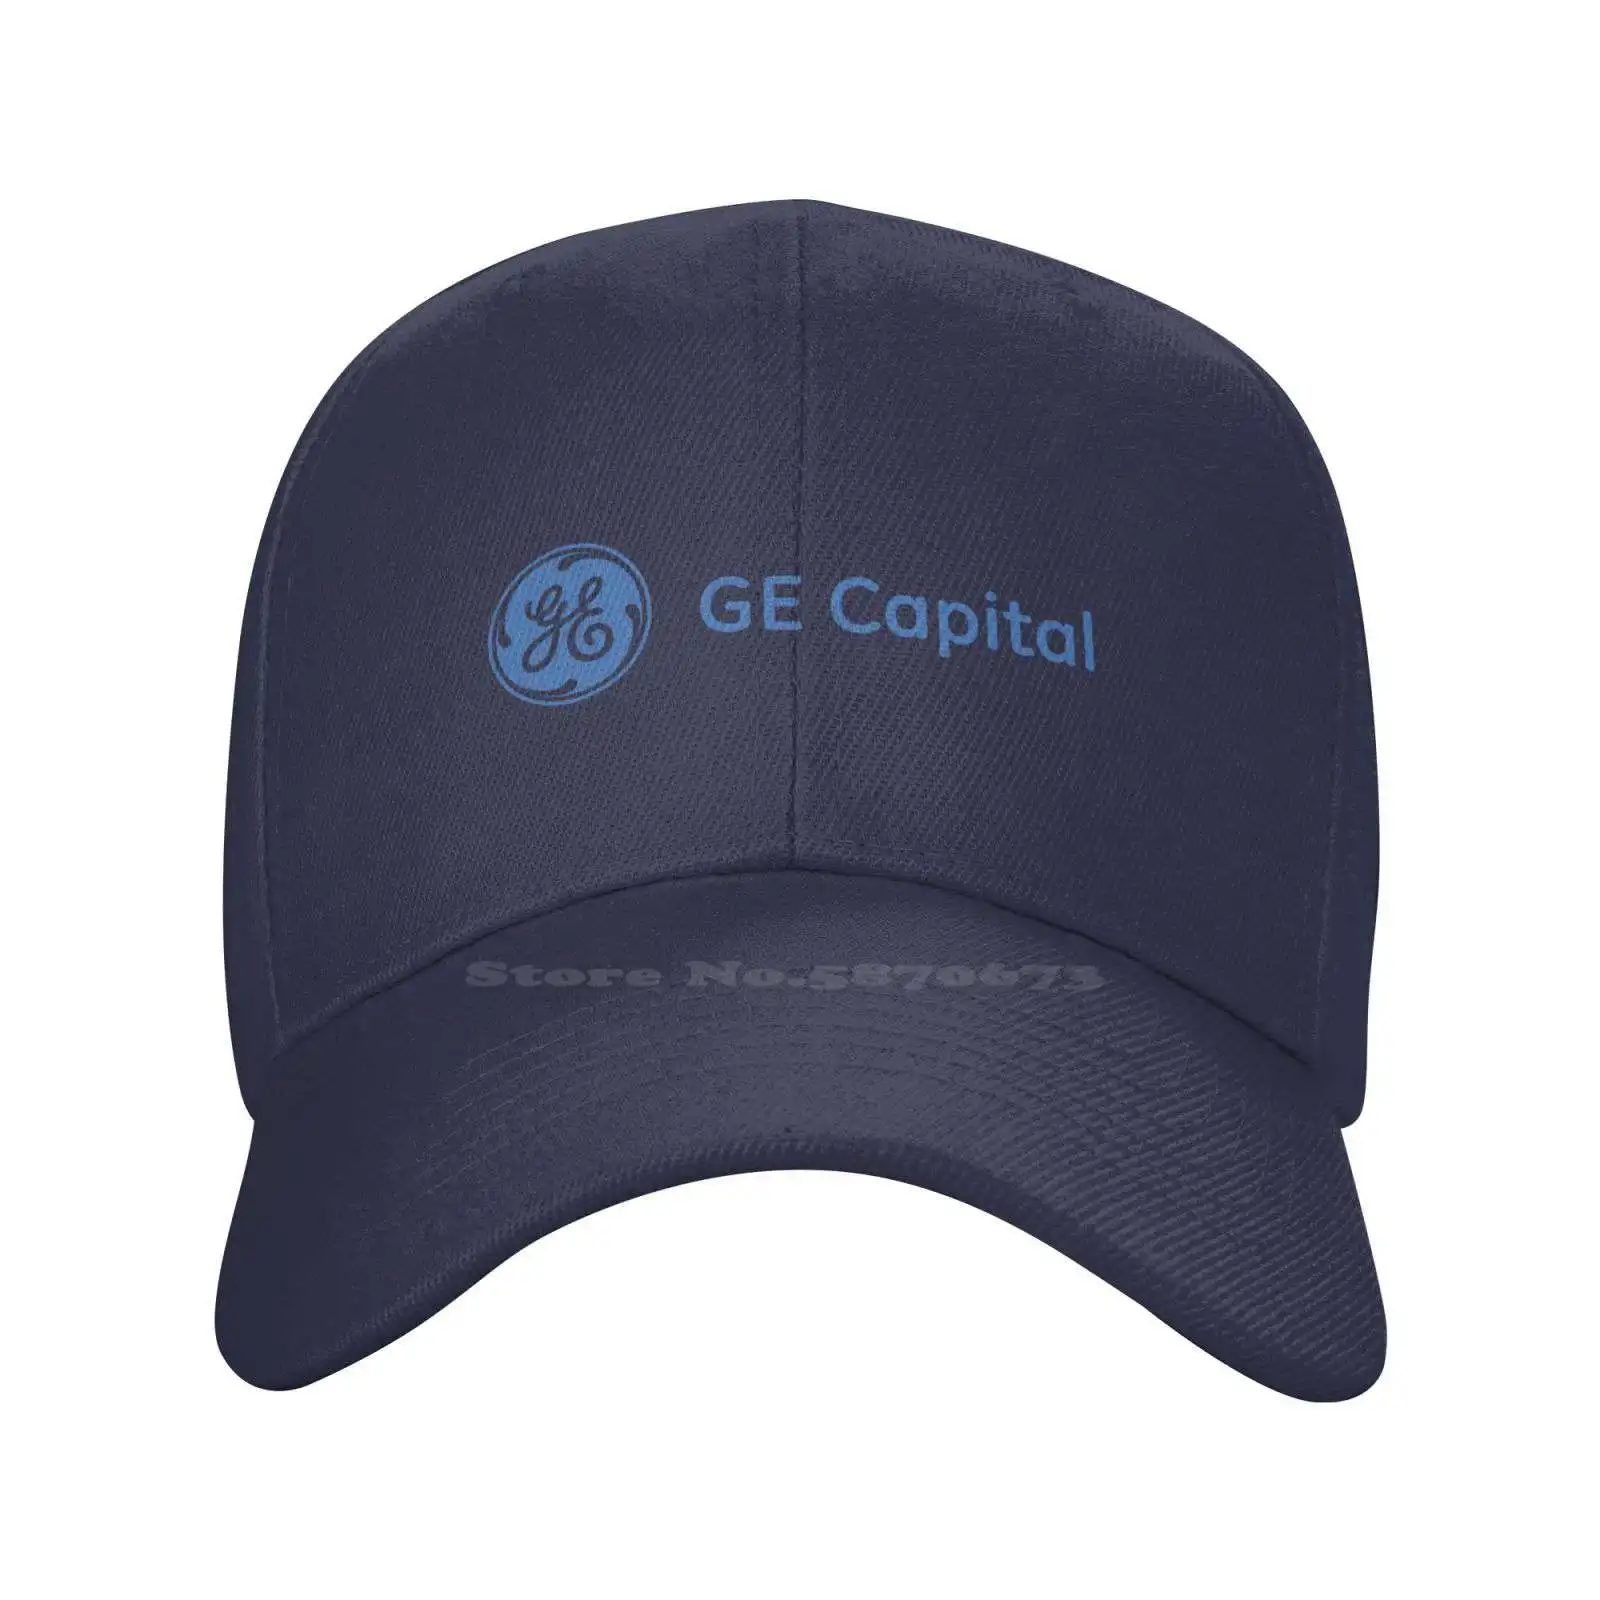 

Качественная джинсовая кепка GE капитал/GE Money, вязаная кепка, бейсболка